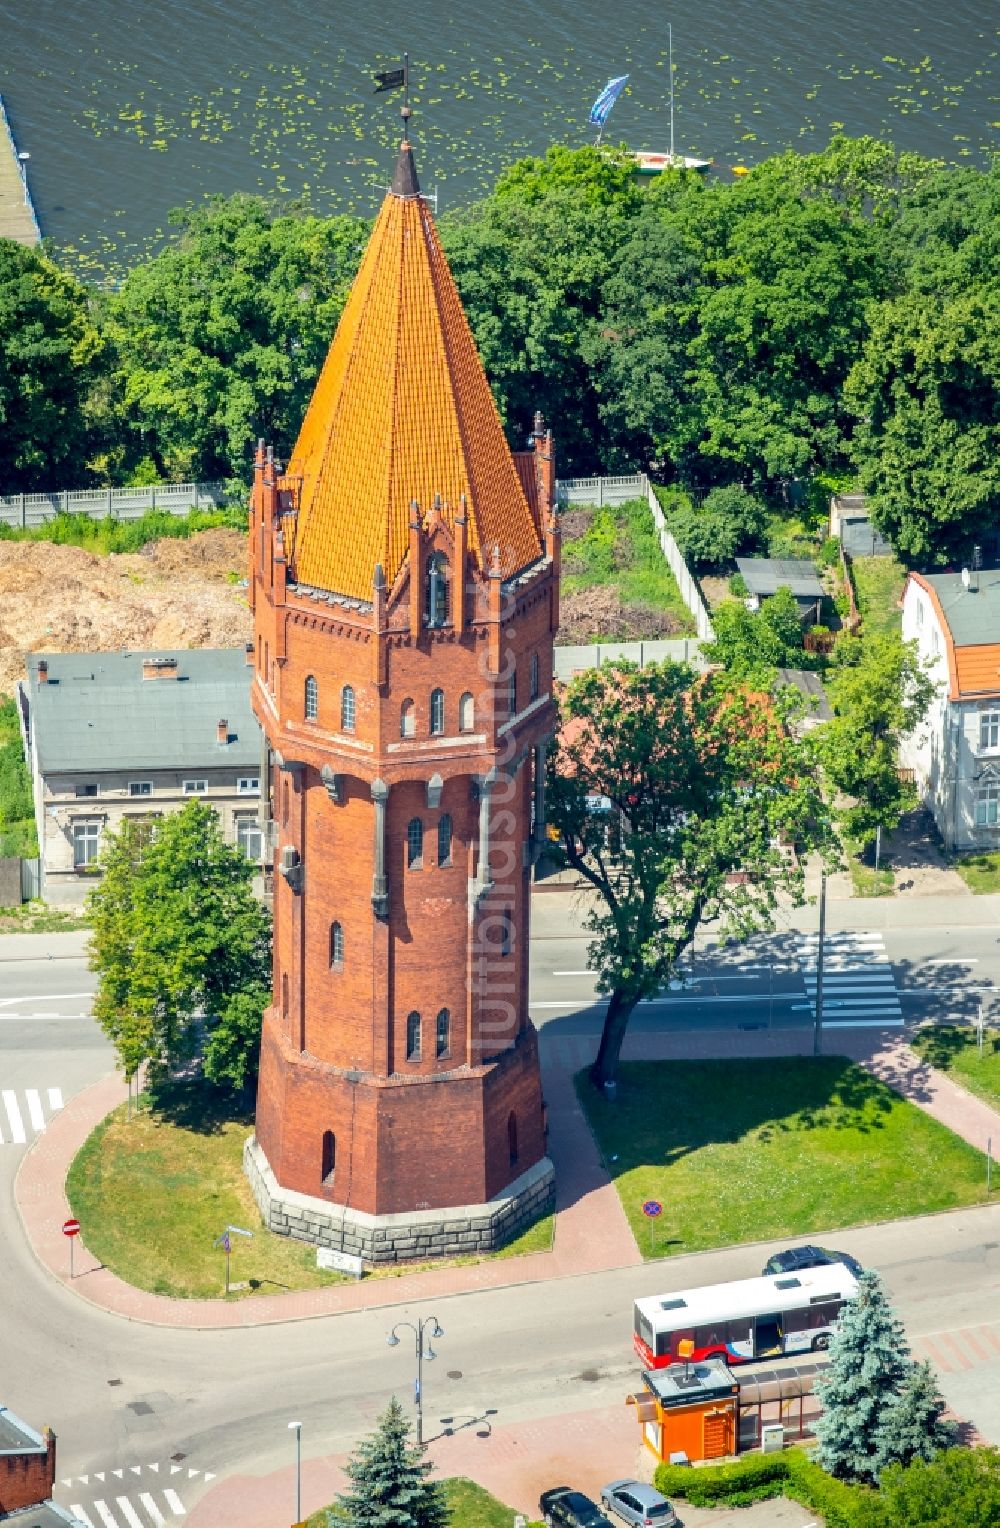 Luftaufnahme Malbork Marienburg - Industriedenkmal Wasserturm in Malbork Marienburg in Pomorskie, Polen